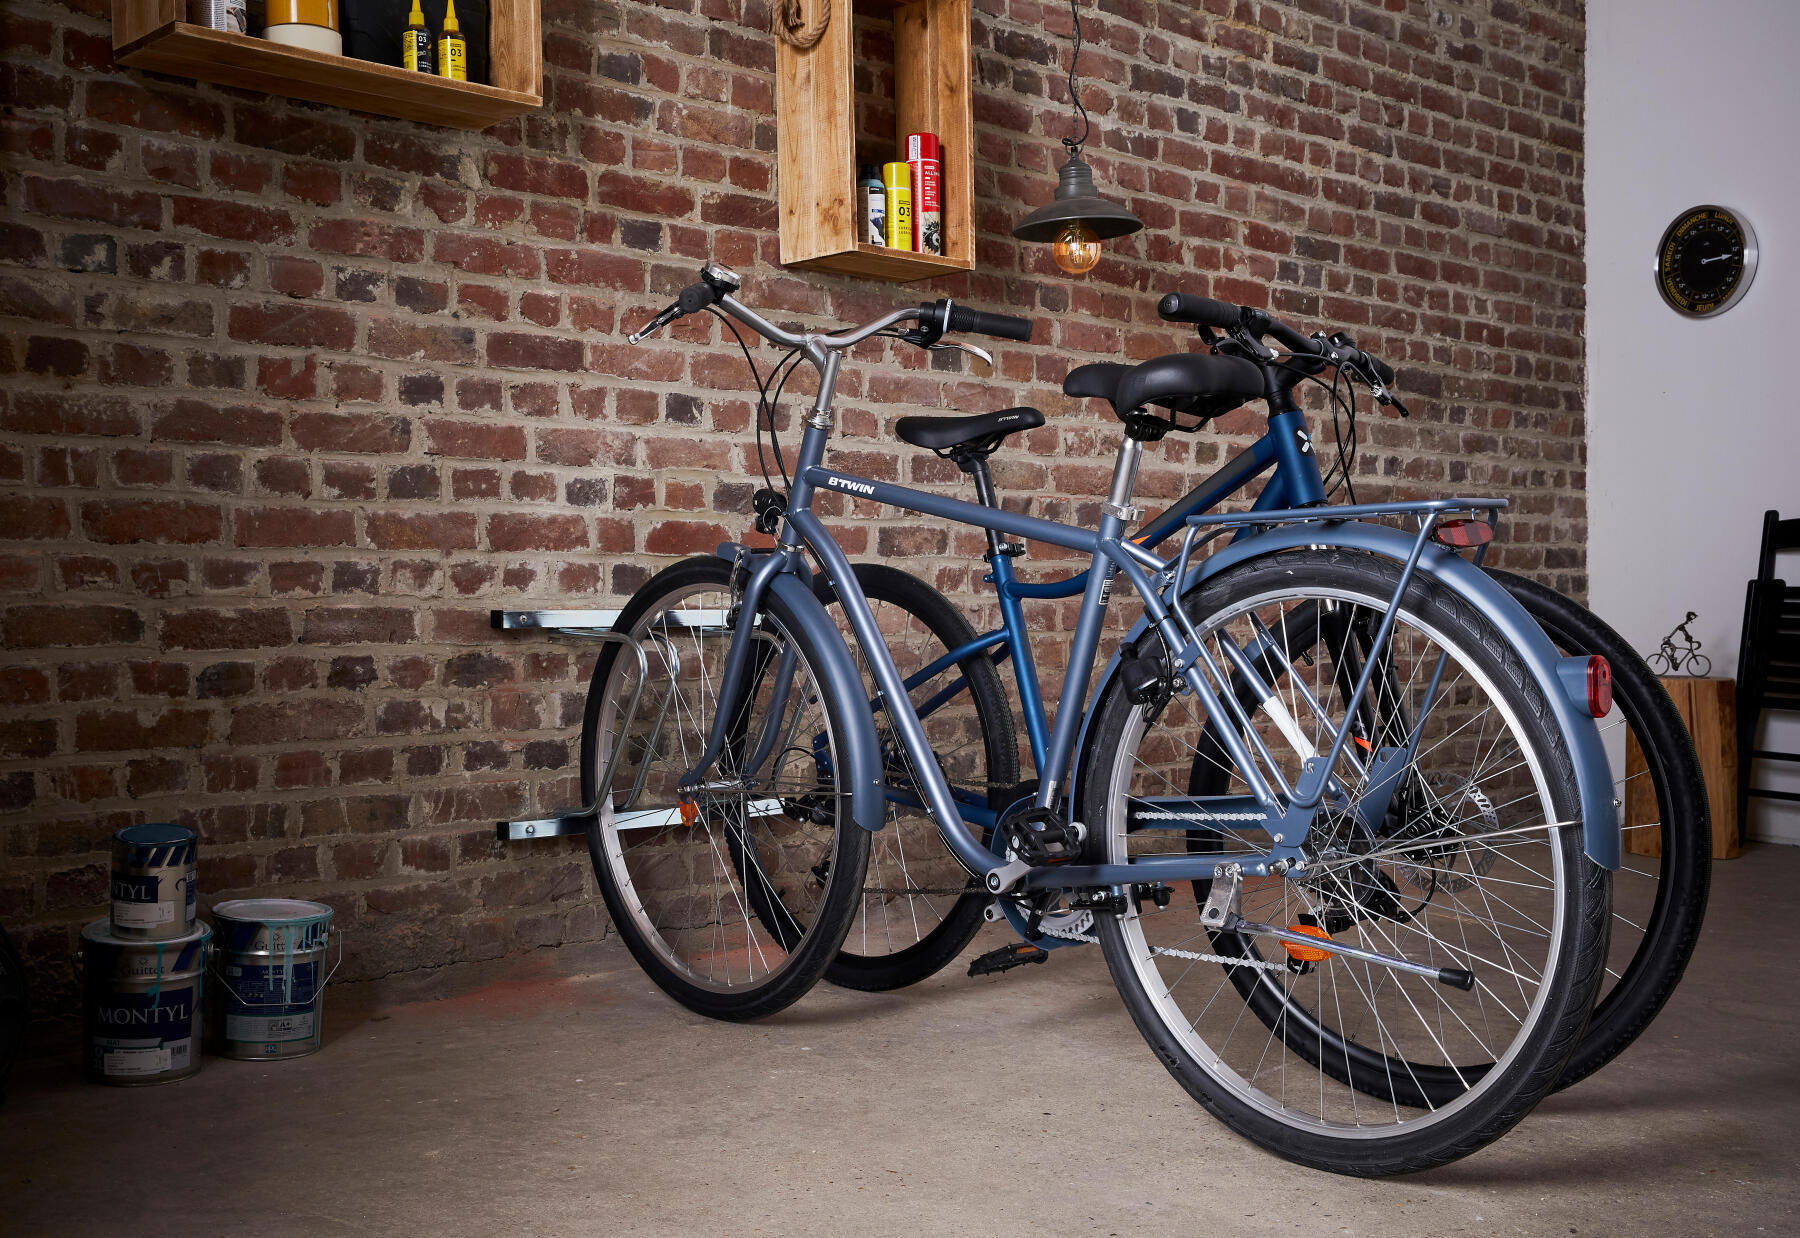 Reparar a bicicleta de cidade - todos os nossos conselhos